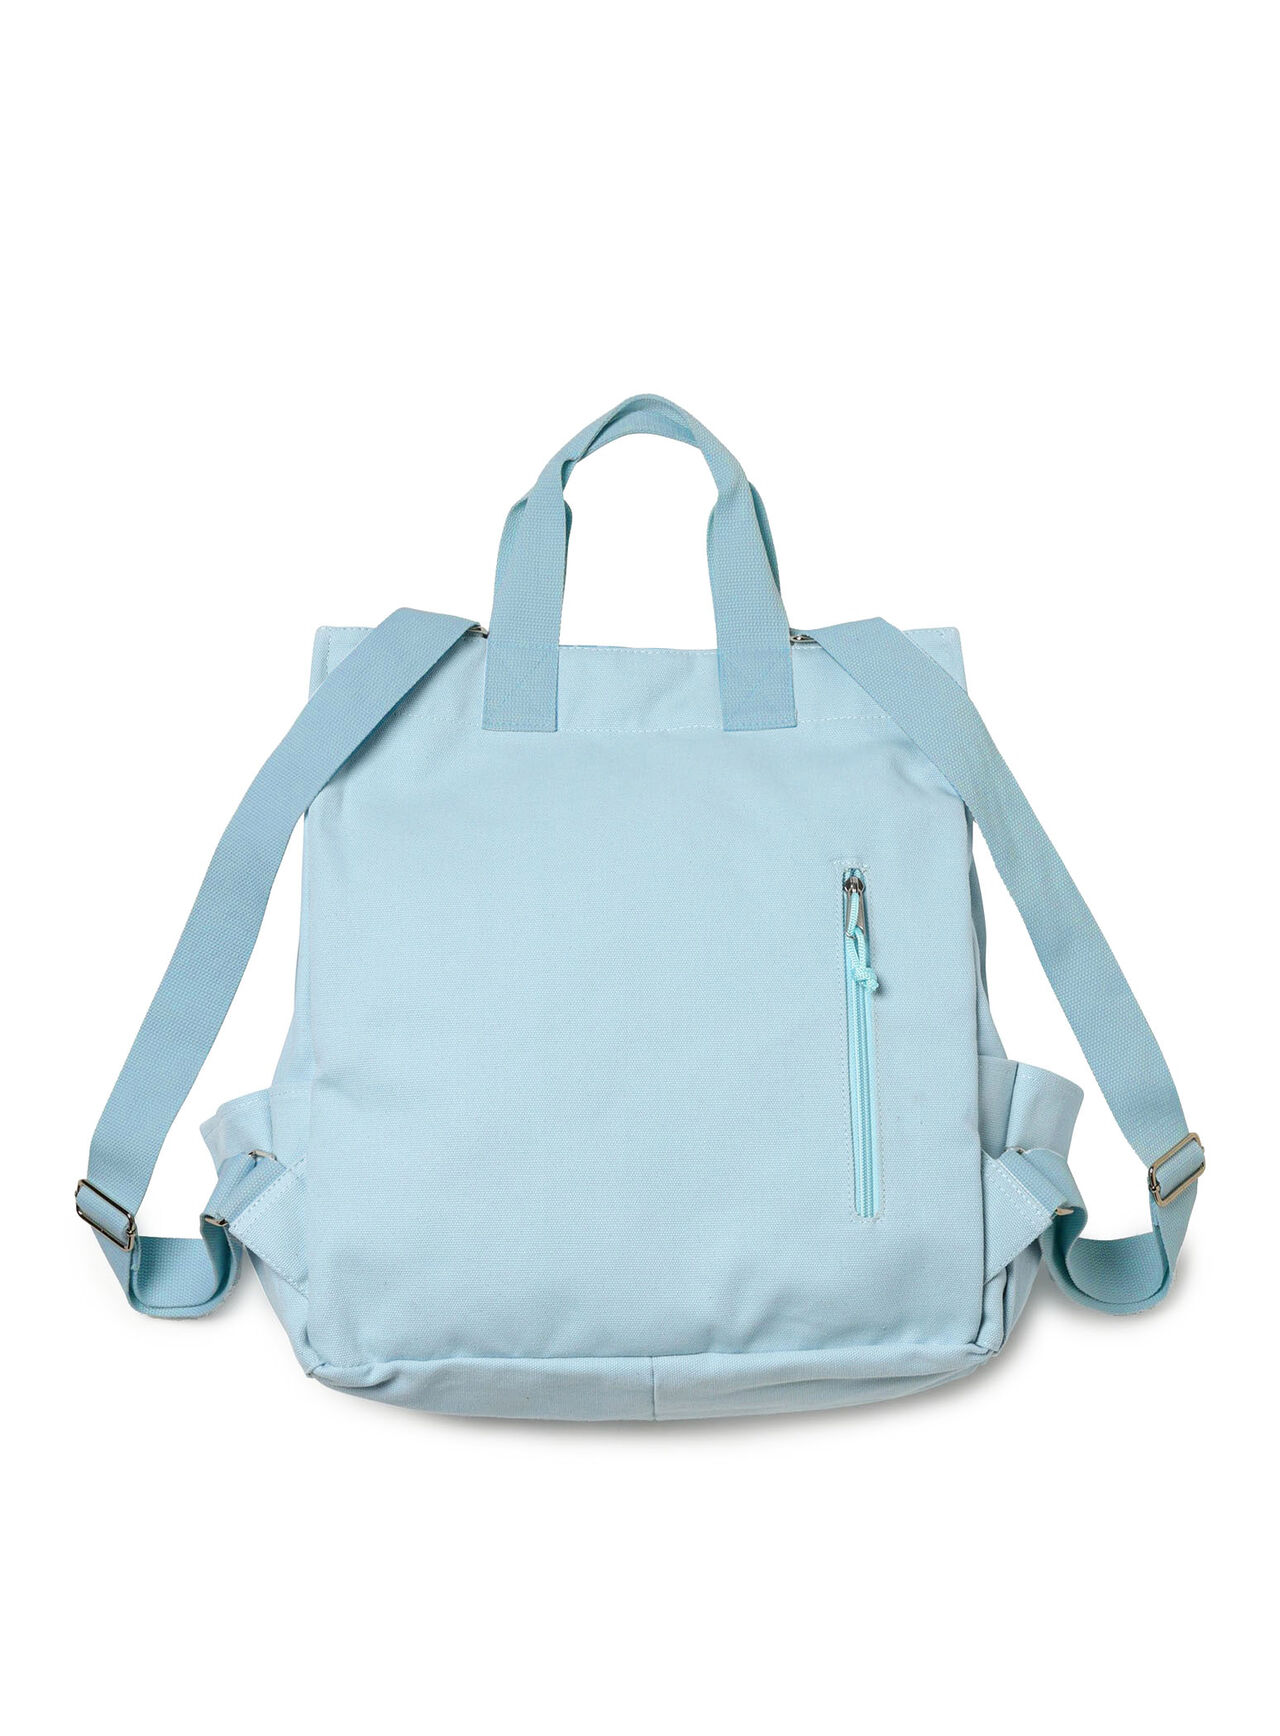 10-pocket backpack,ONE, large image number 4